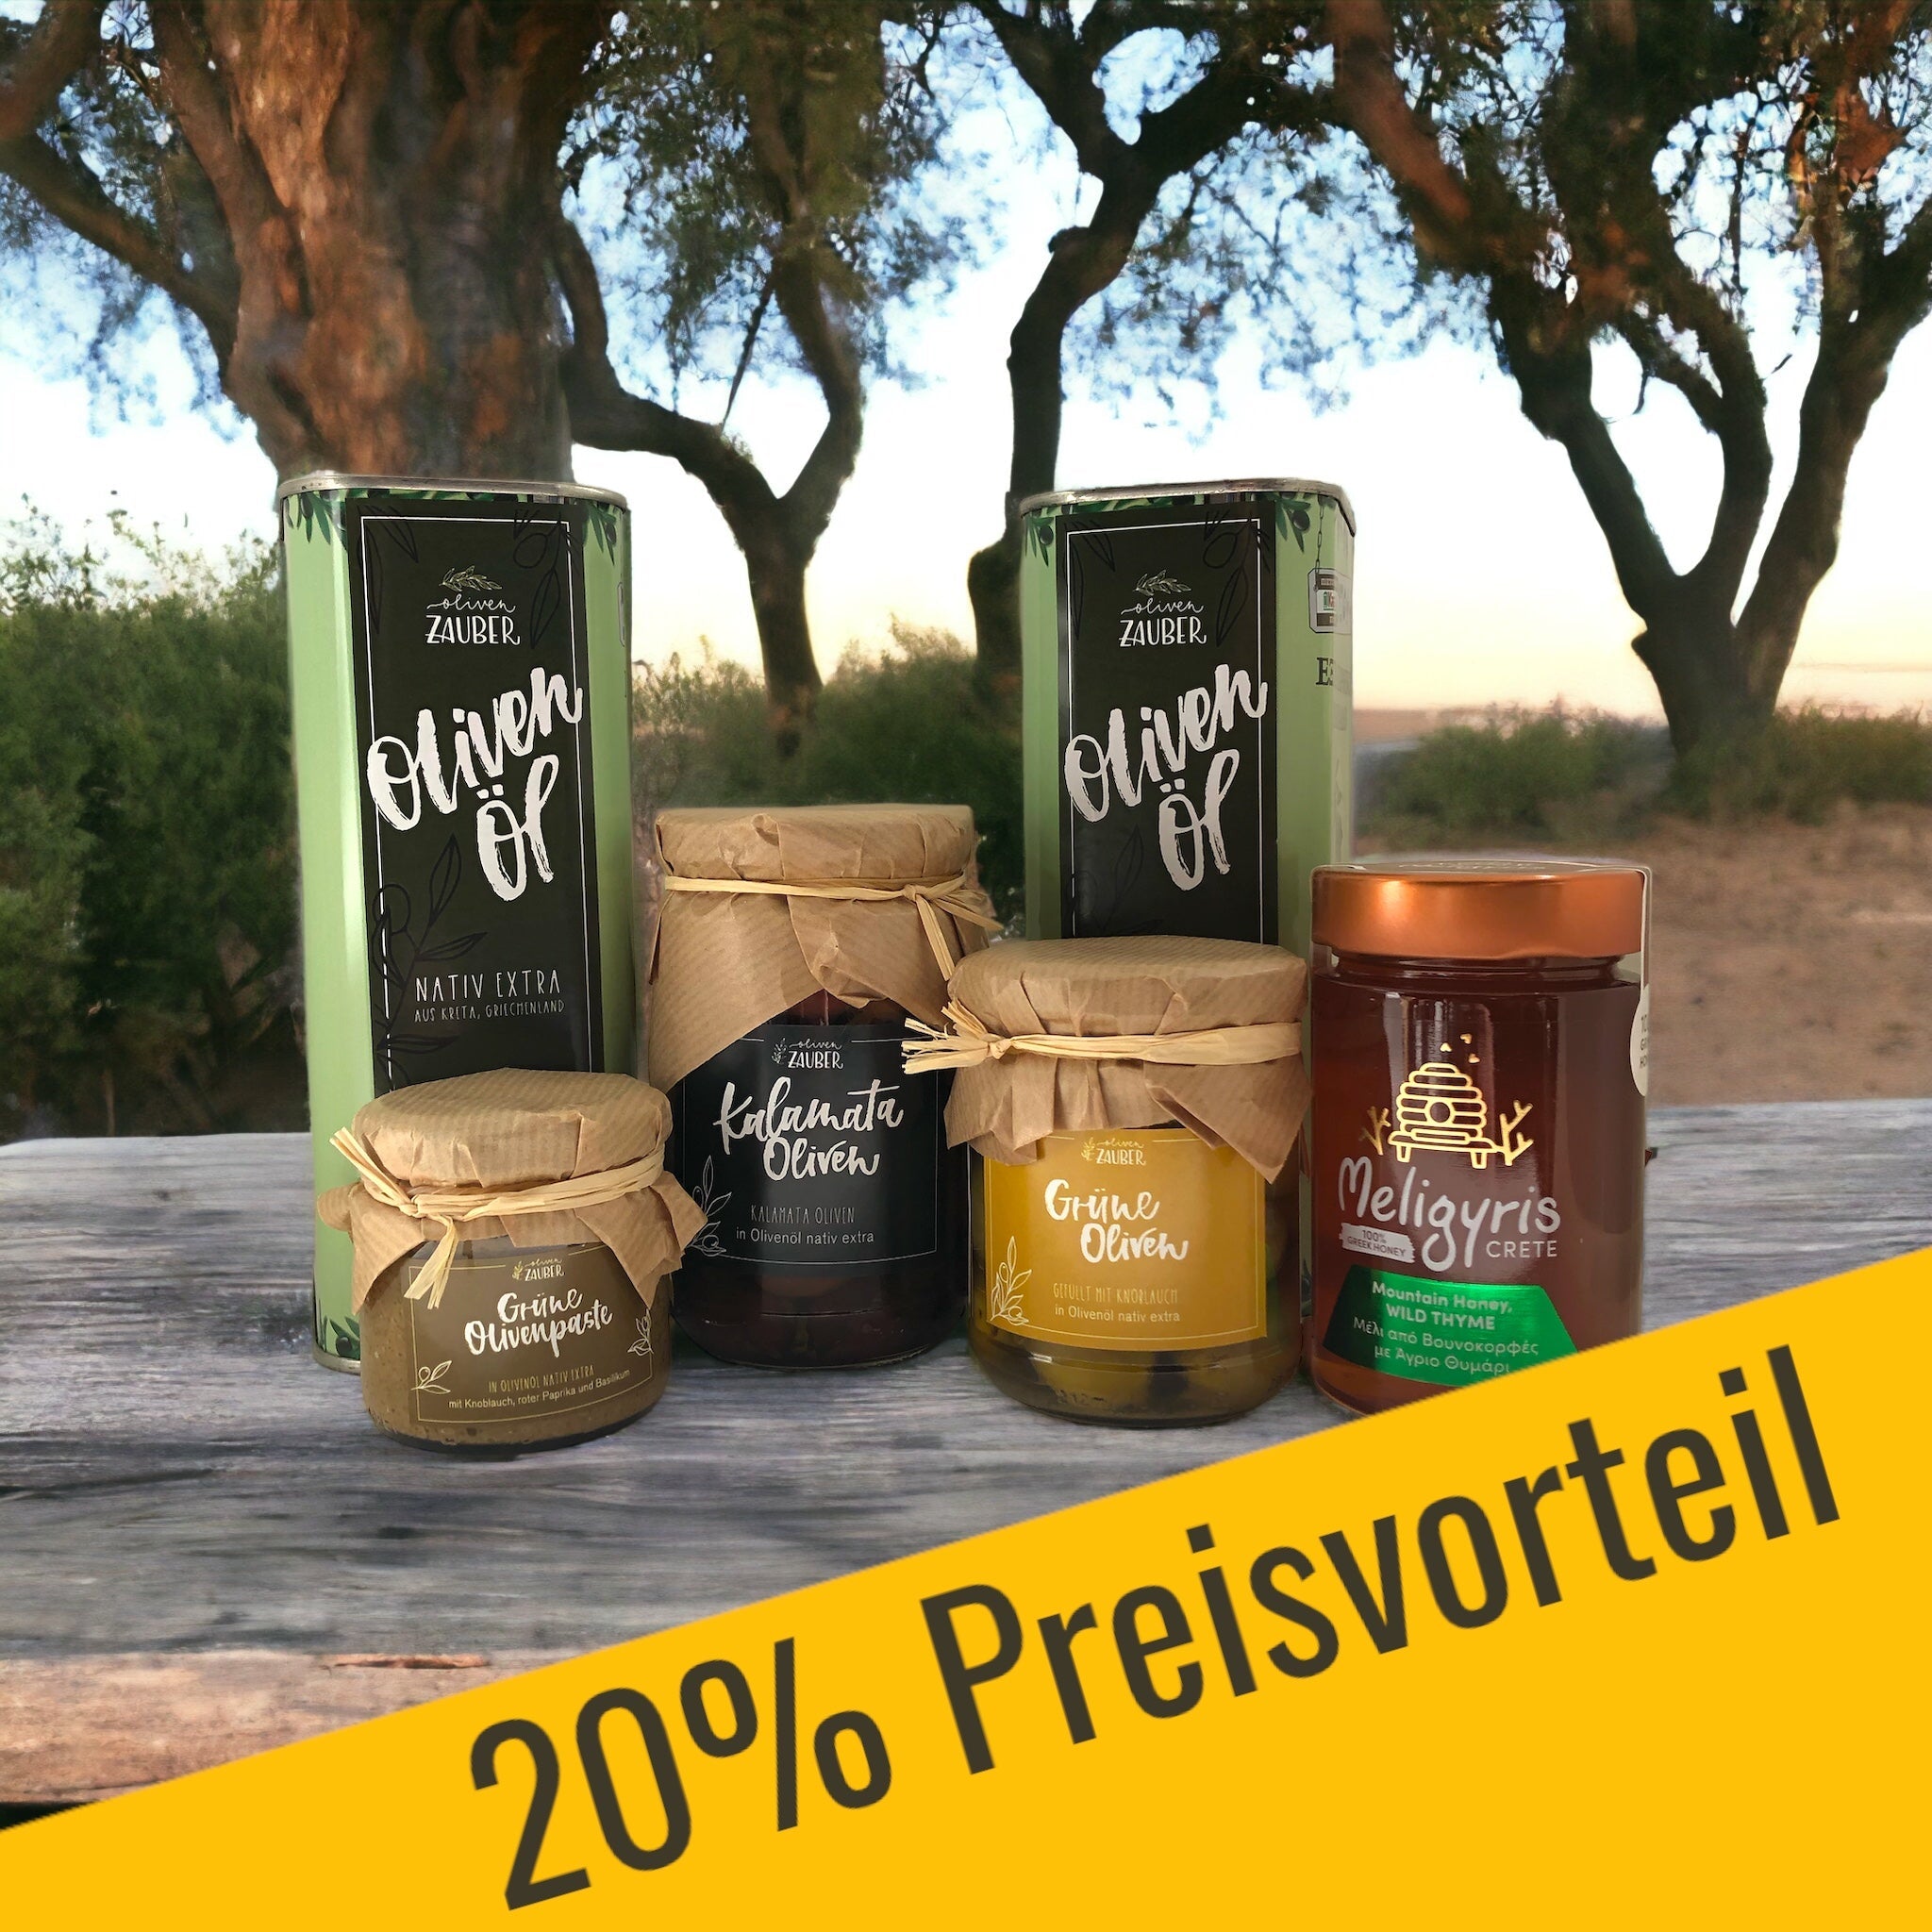 OlivenZauber Probierpaket mit 20% Preisvorteil - OlivenZauber - Olivenöl neu erleben